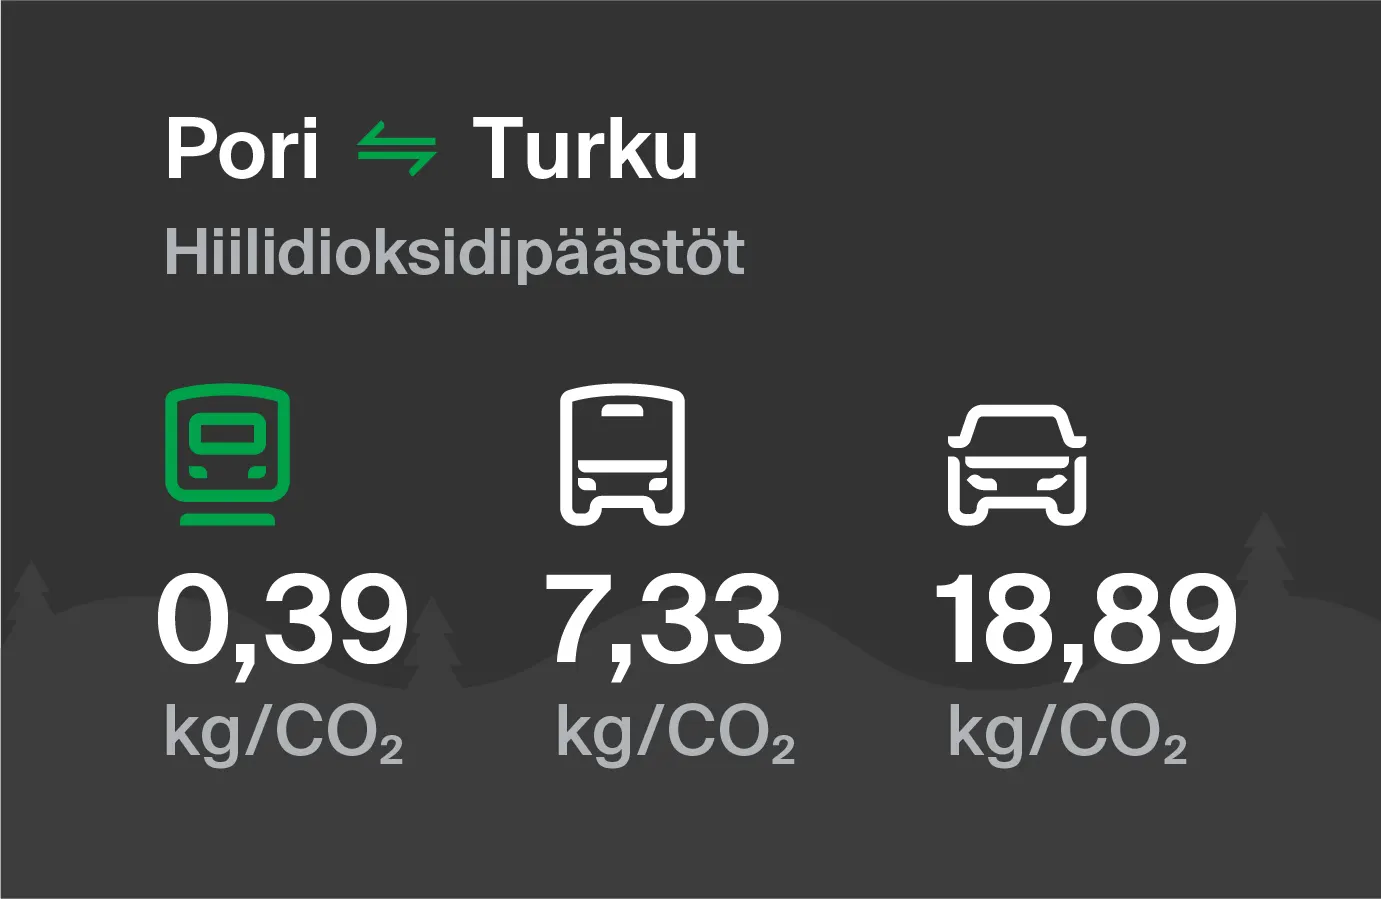 Hiilidioksidipäästöt Porista Turkuun eri kulkuvälinemuodoilla: junalla 0,39 kg/CO2, bussilla 7,33 kg/CO2 ja autolla 18,89 kg/CO2.